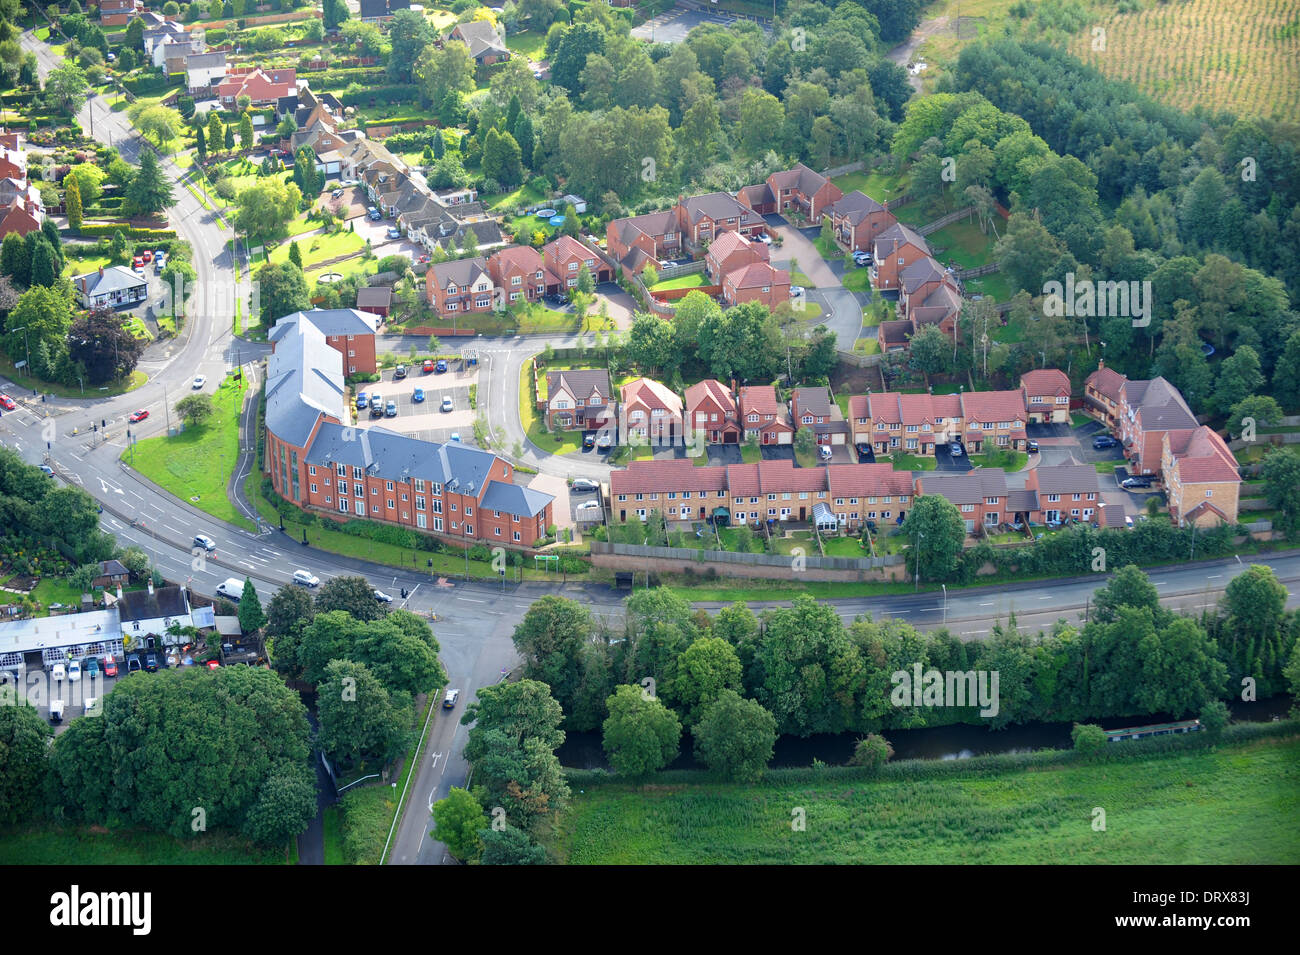 Luftaufnahme der Wohnsiedlung erbaut auf dem Gelände einer ehemaligen Kneipe Stewponey Inn in Stourton, West Mildands, England, UK Stockfoto